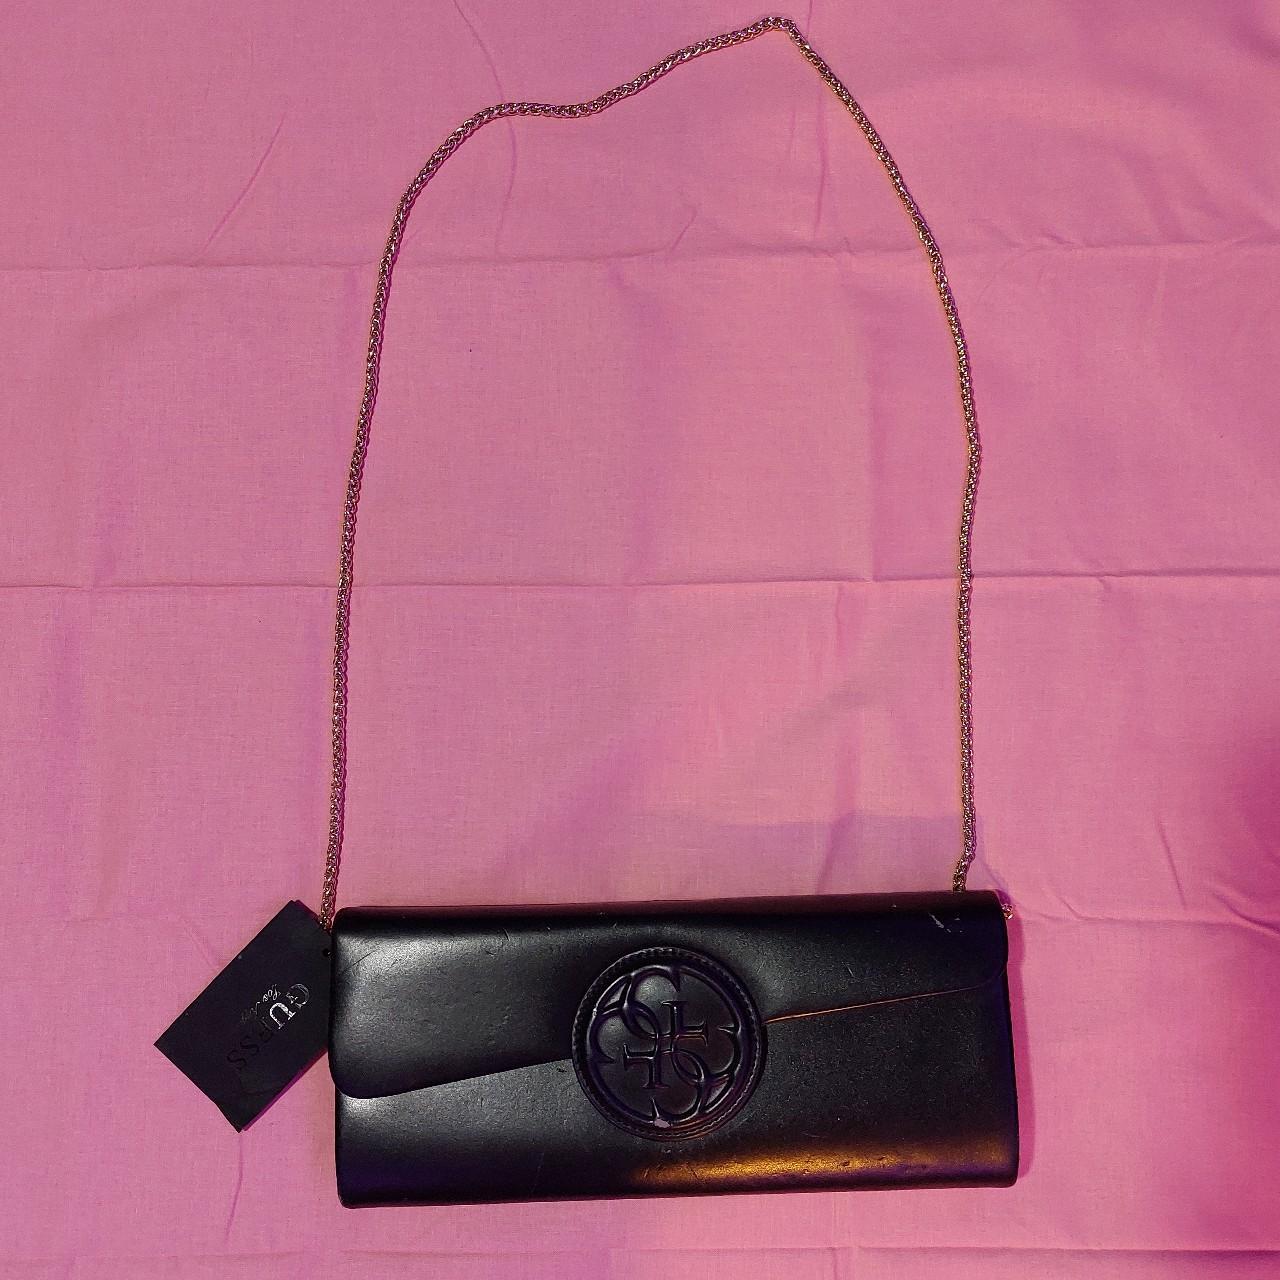 Buy Guess Handbag Purse Grey Black Online in India - Etsy